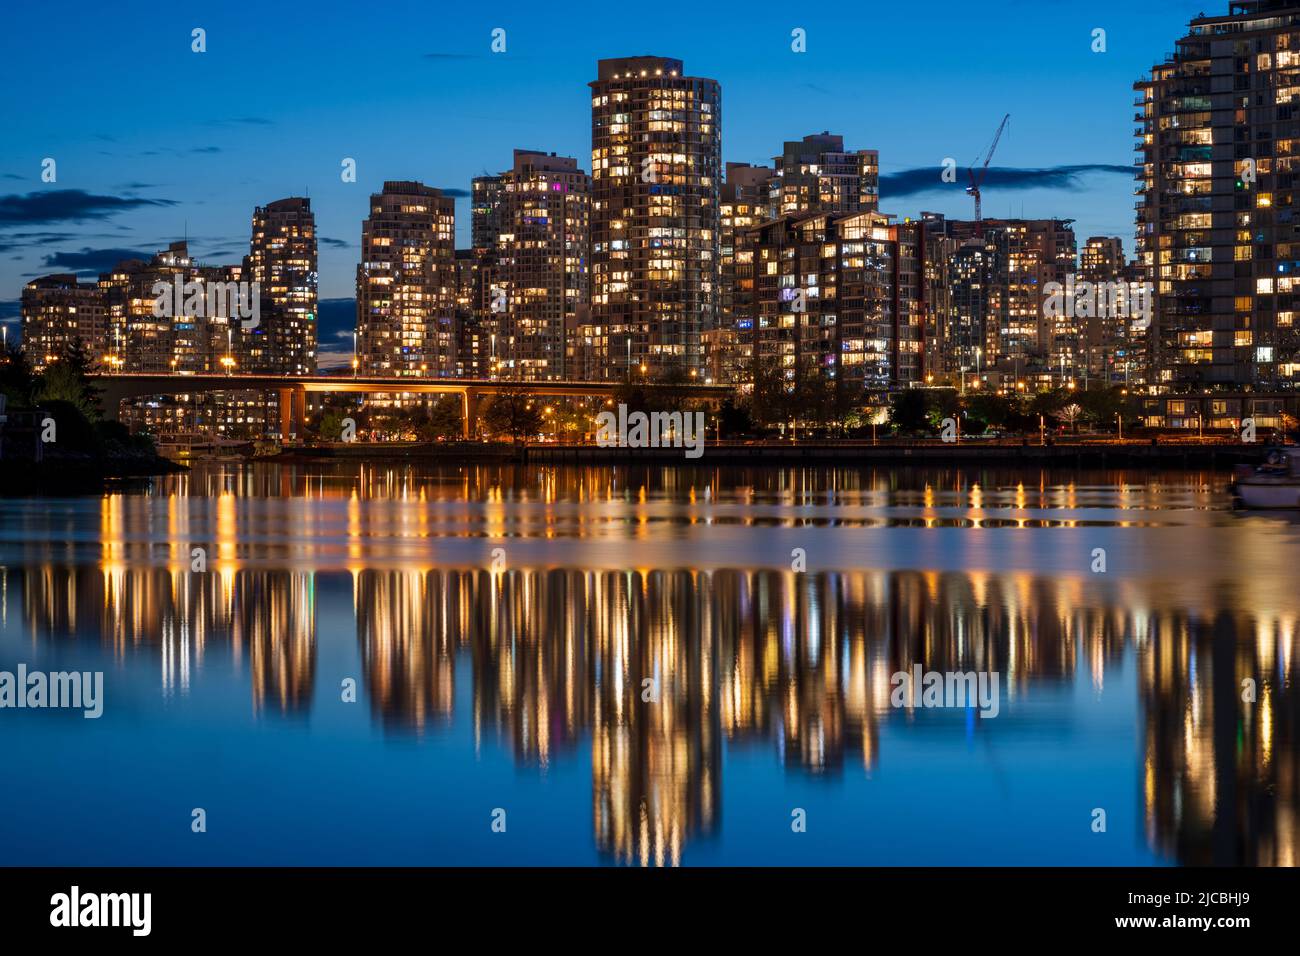 Stadtnacht, Skyline in der Dämmerung von Vancouver. Gebäude Lichter Reflexion auf False Creek Wasser. British Columbia, Kanada. Stockfoto